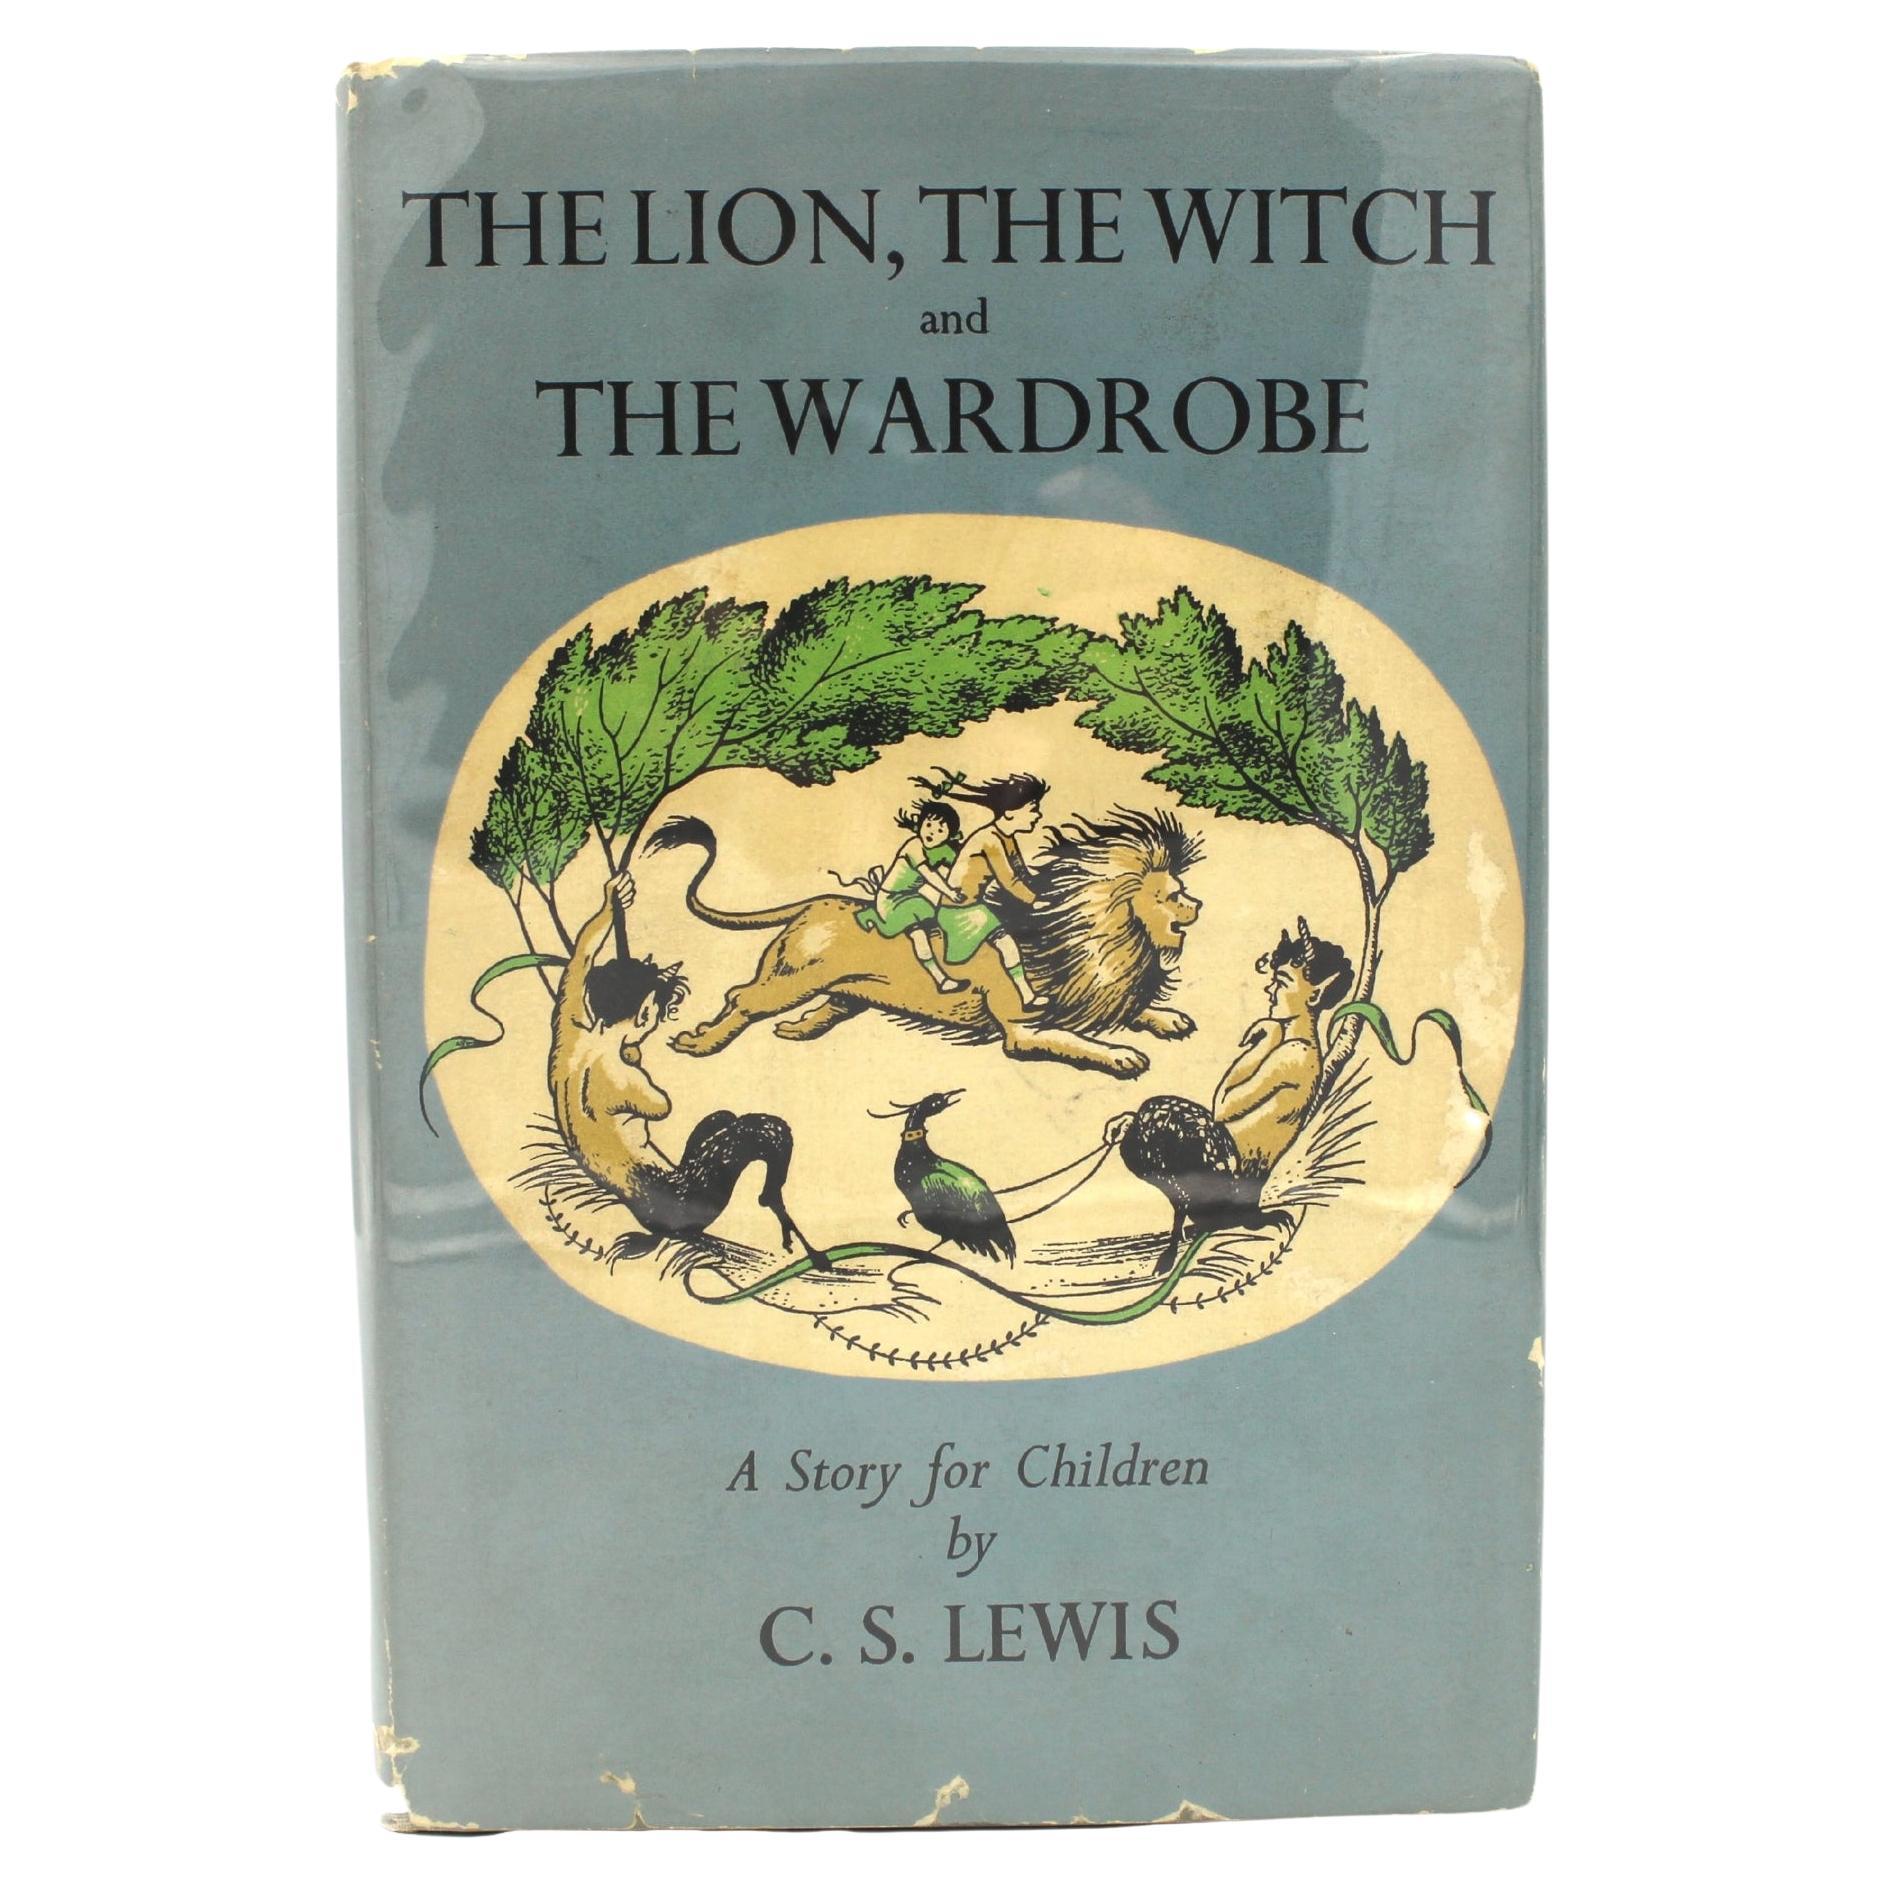 Le lion, la Witch et la garde-robe de C. S. Lewis, première édition américaine dans DJ